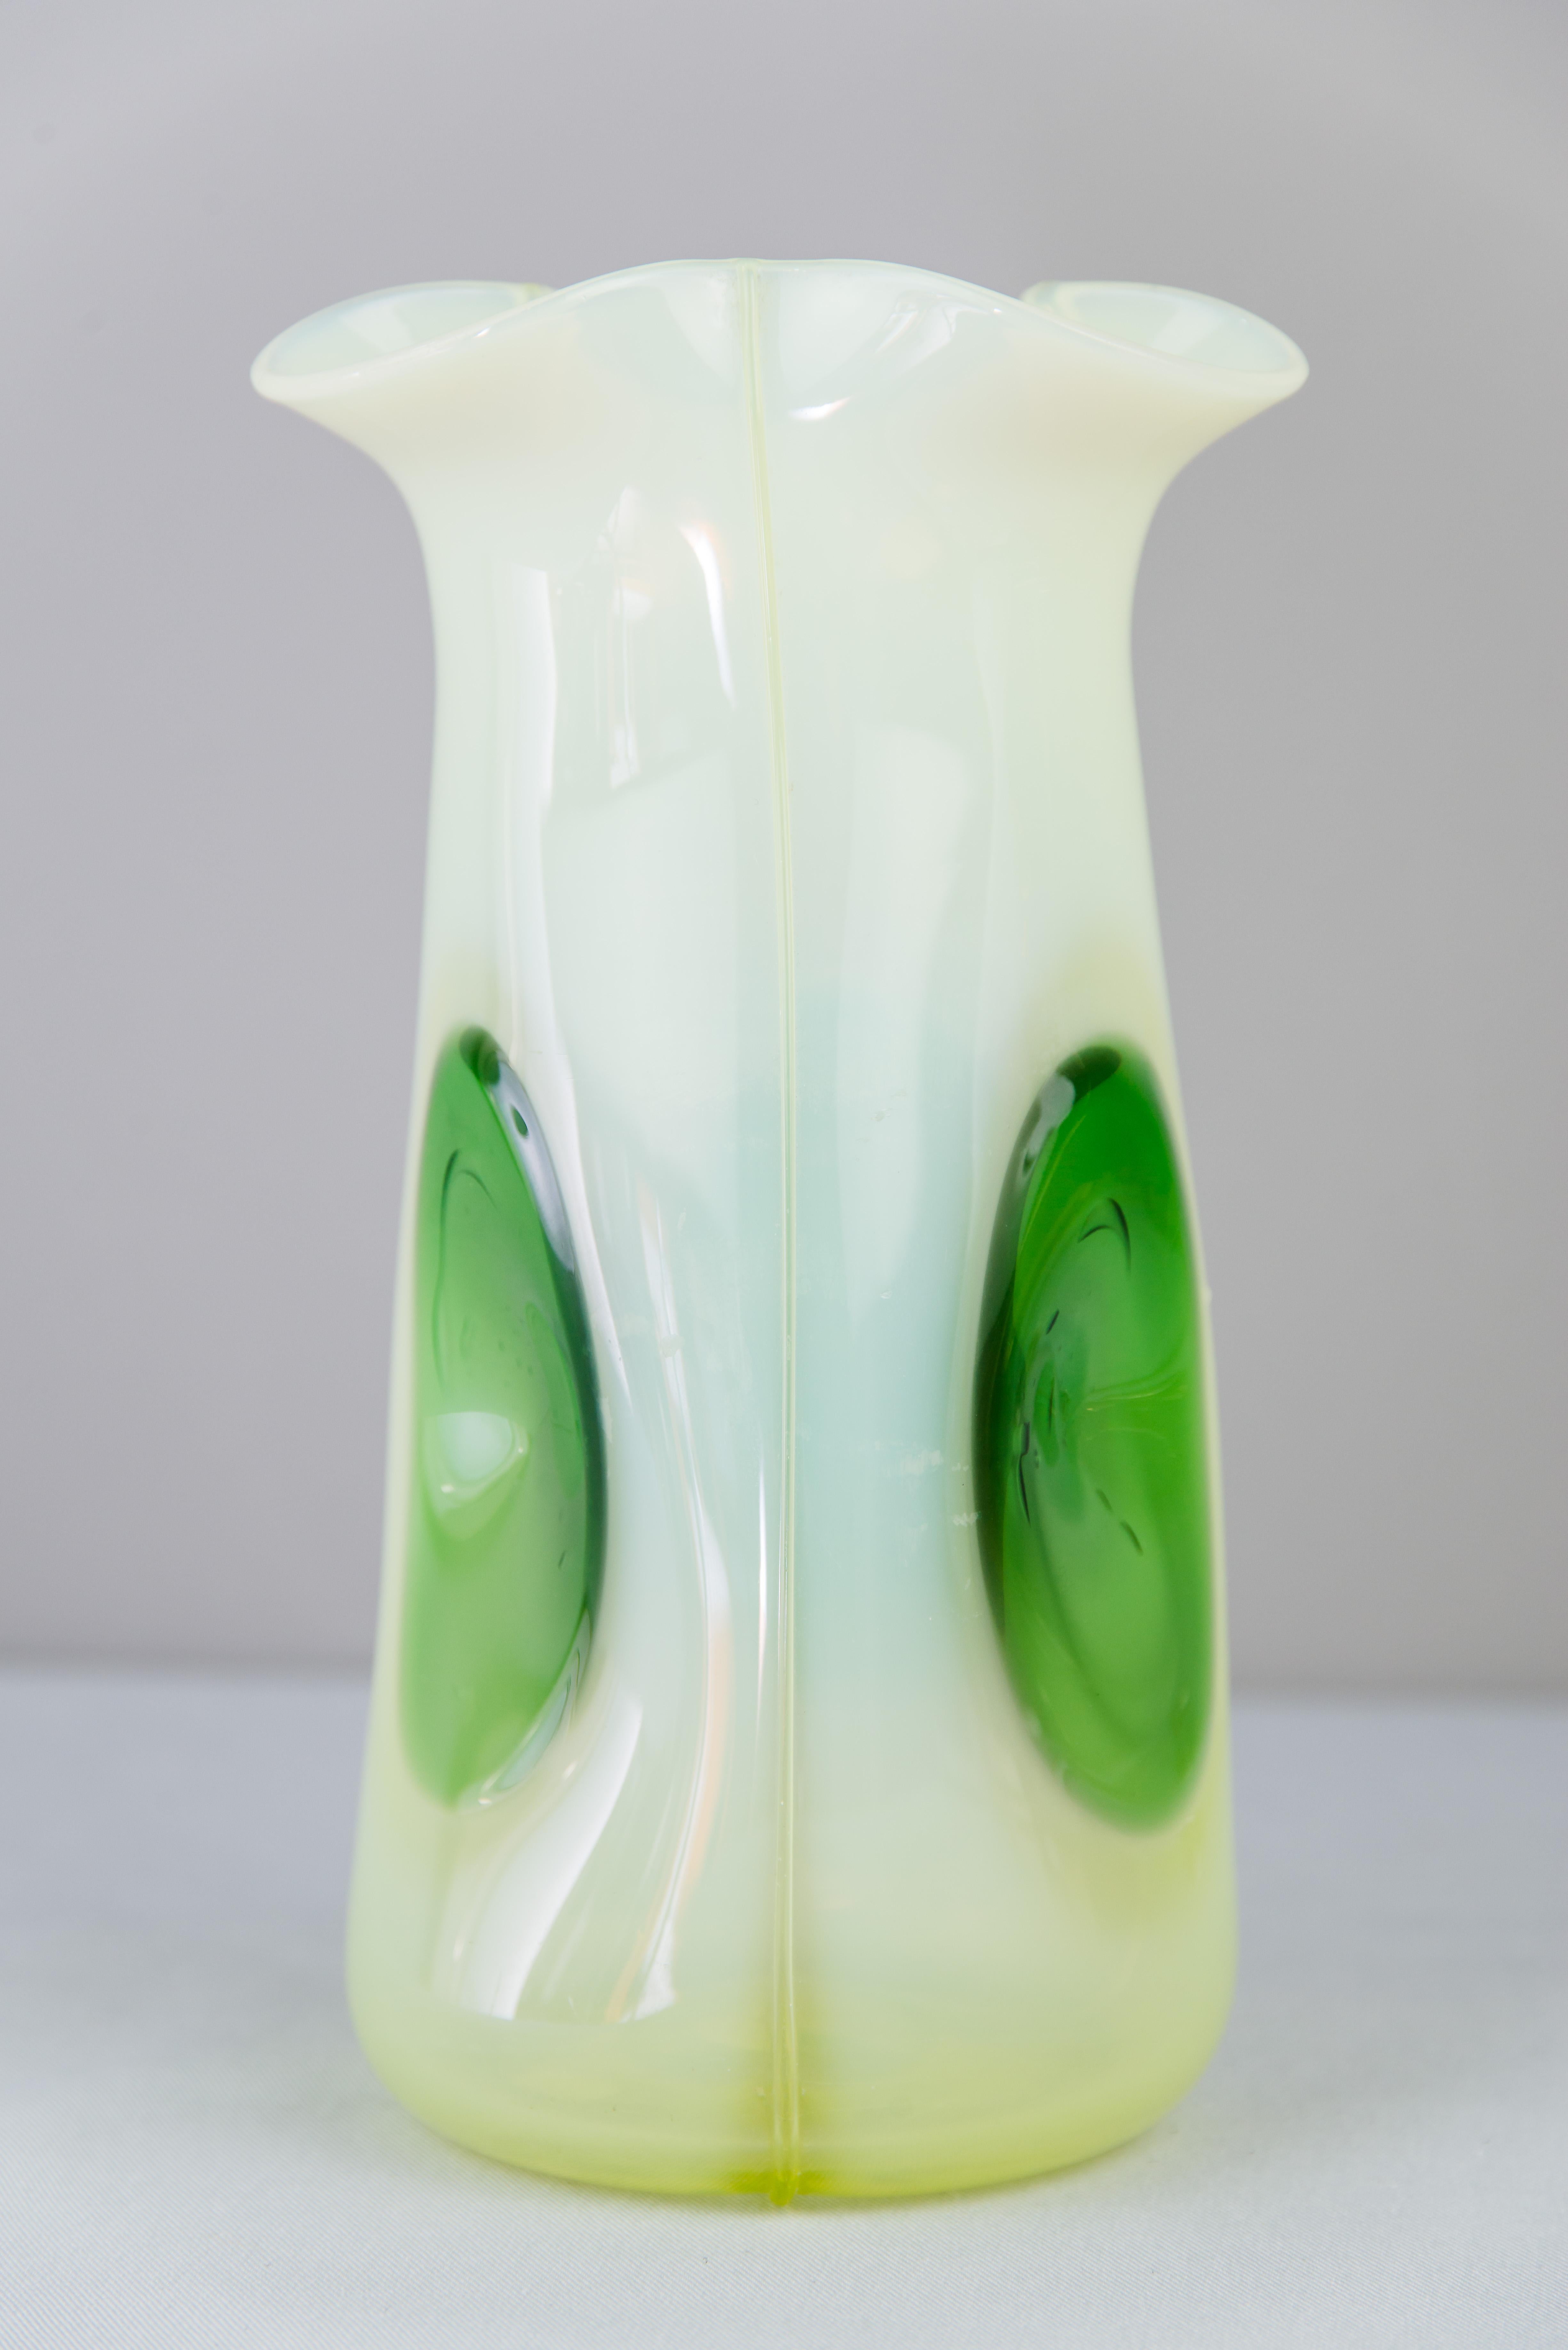 Jugendstil glass vase, circa 1908
Original condition.